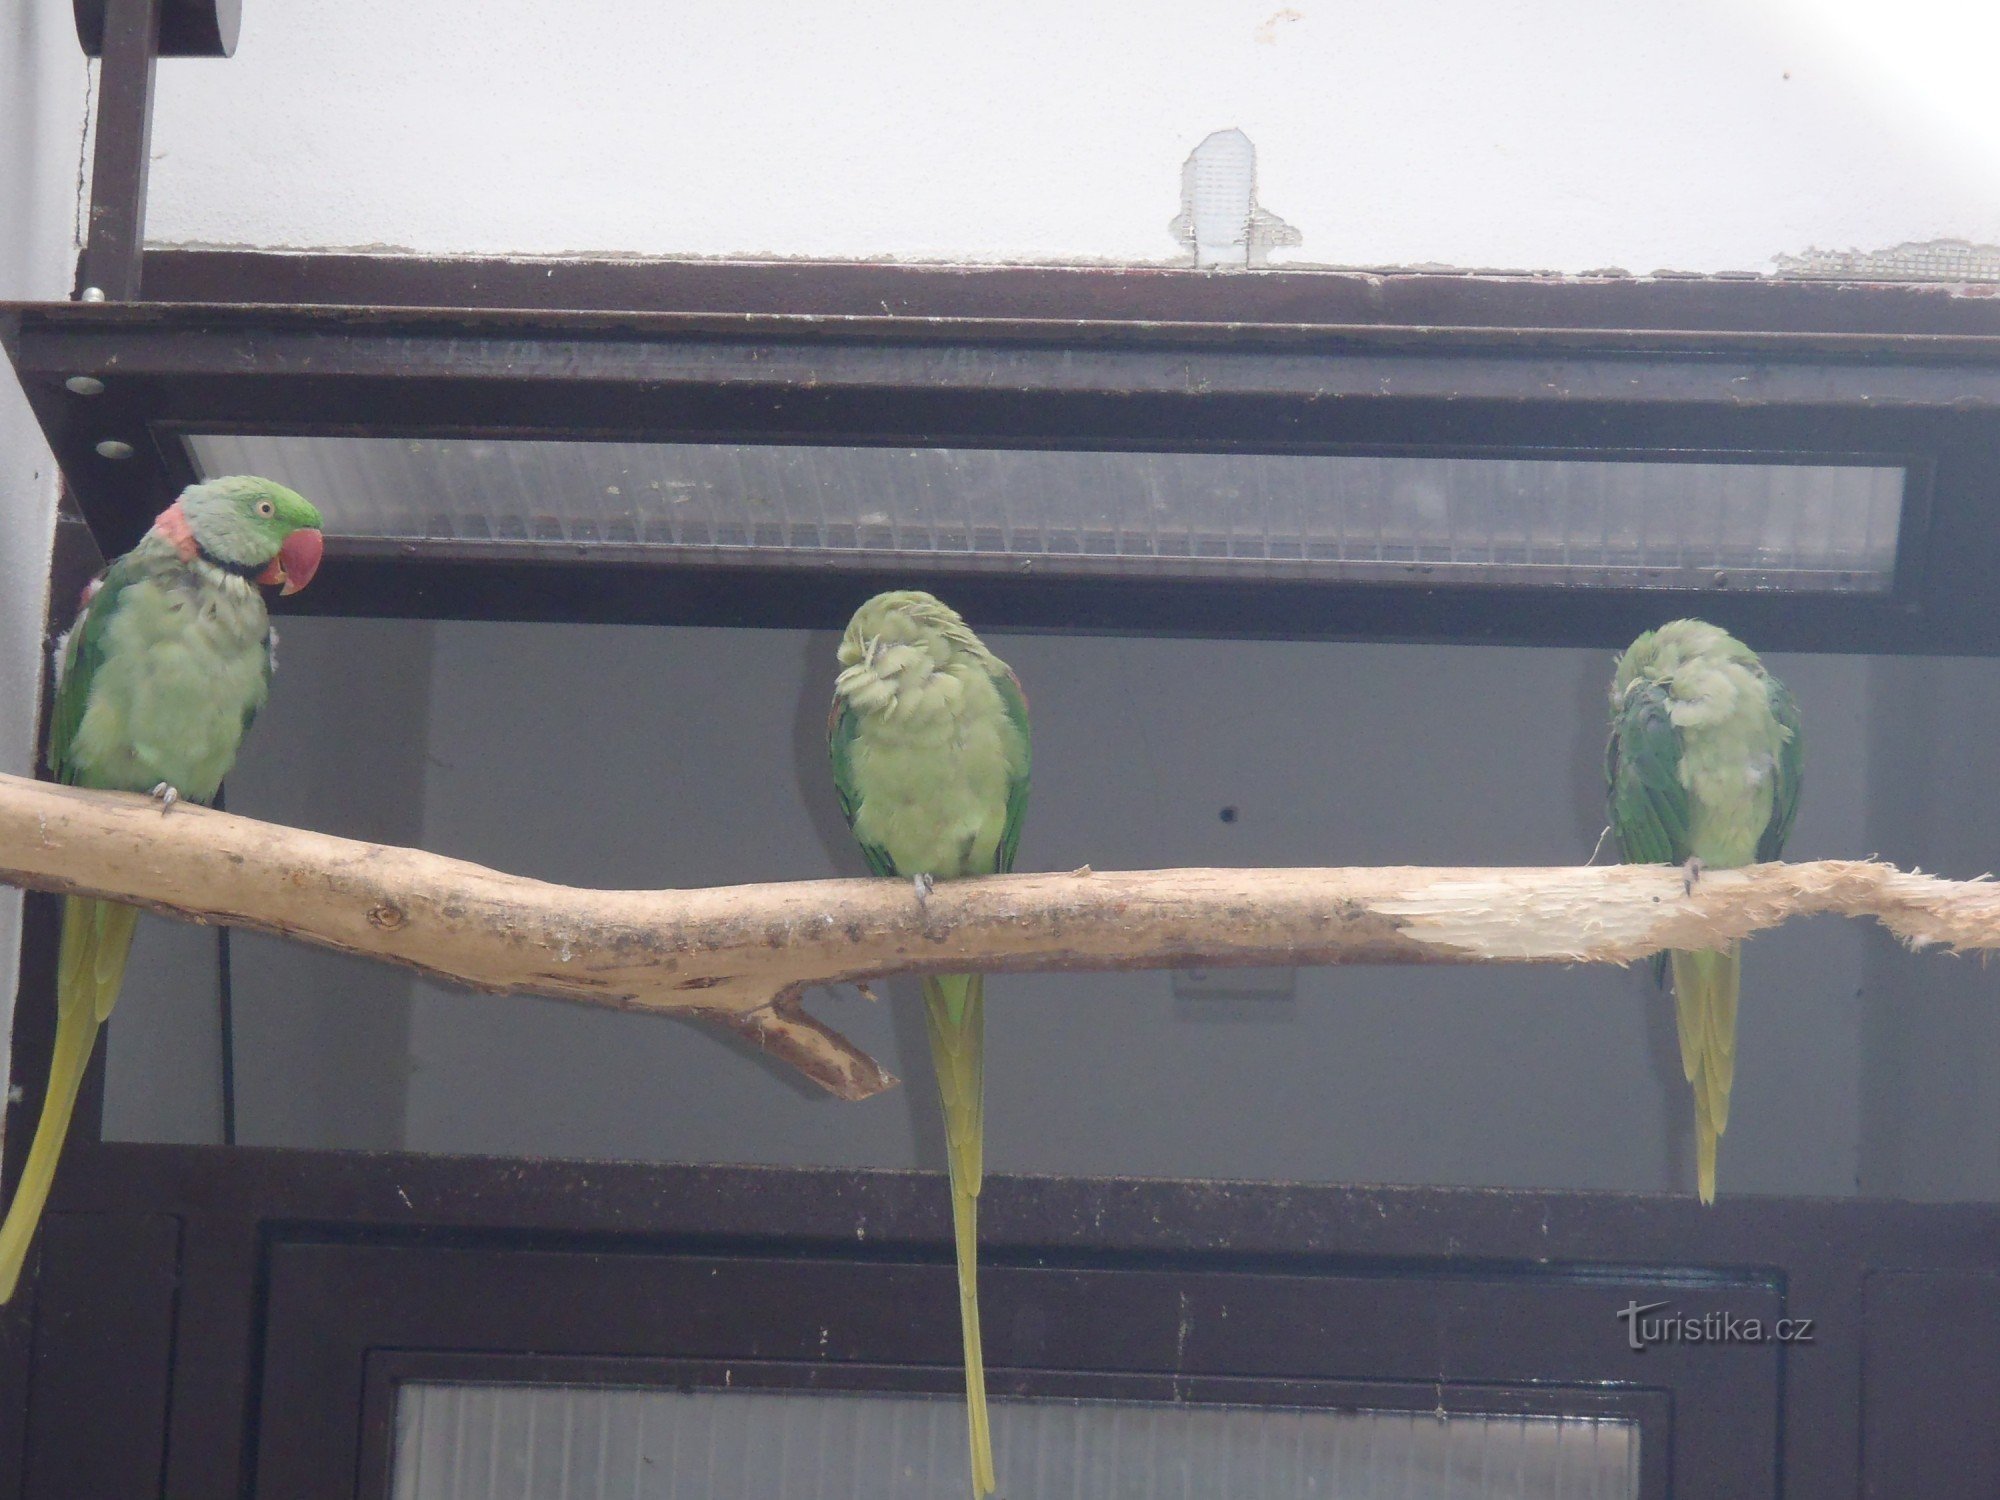 Pelhřimov - papugi w parku